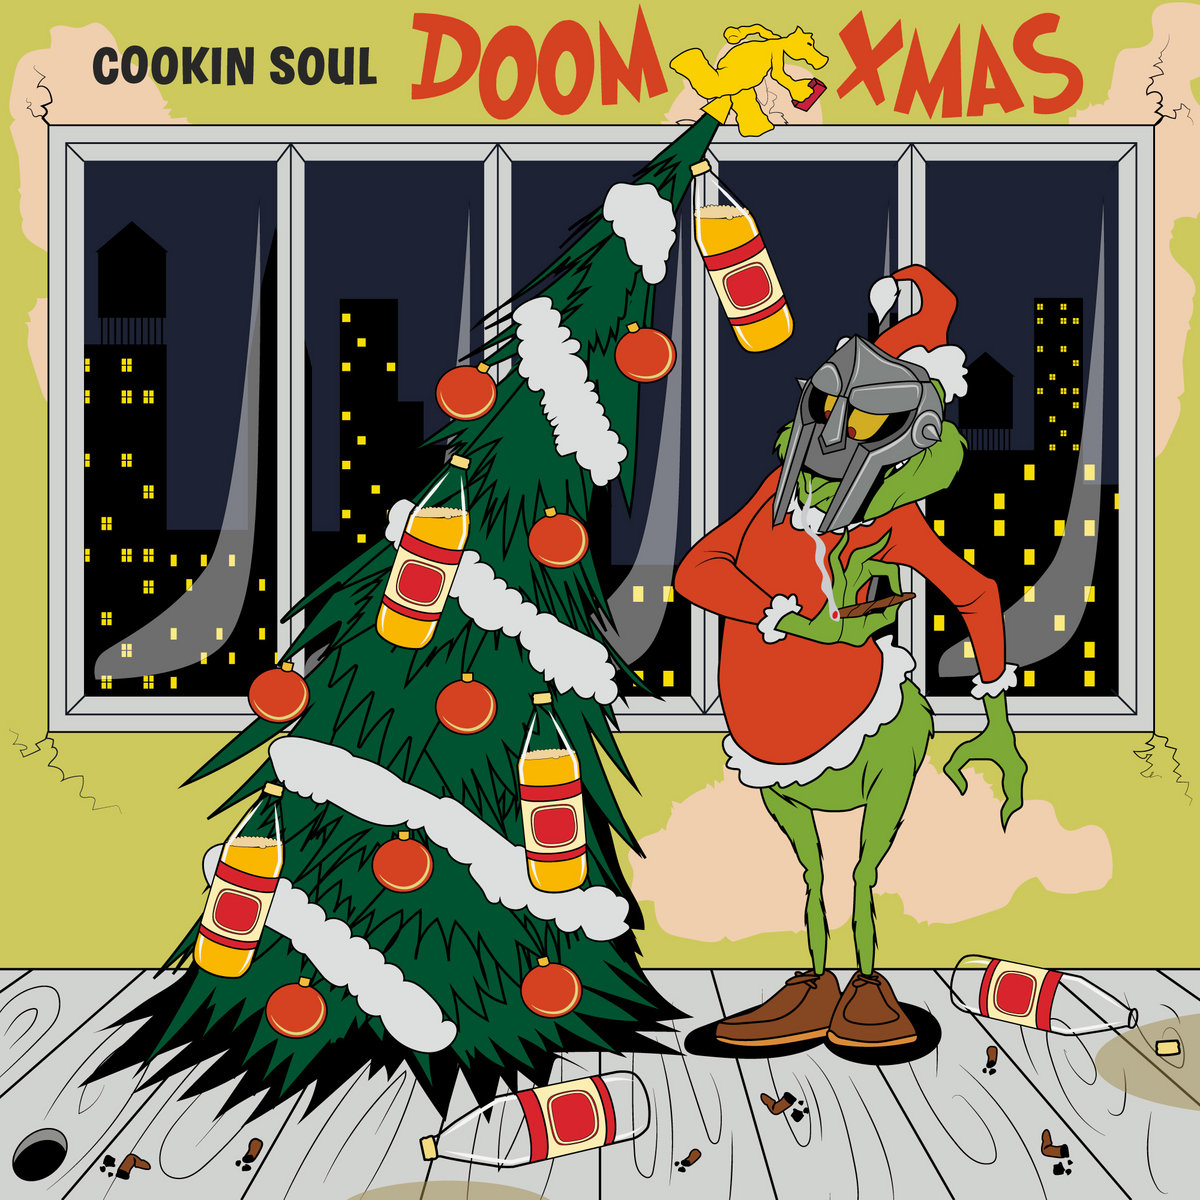 MF DOOM & Cookin Soul DOOM XMAS cover artwork